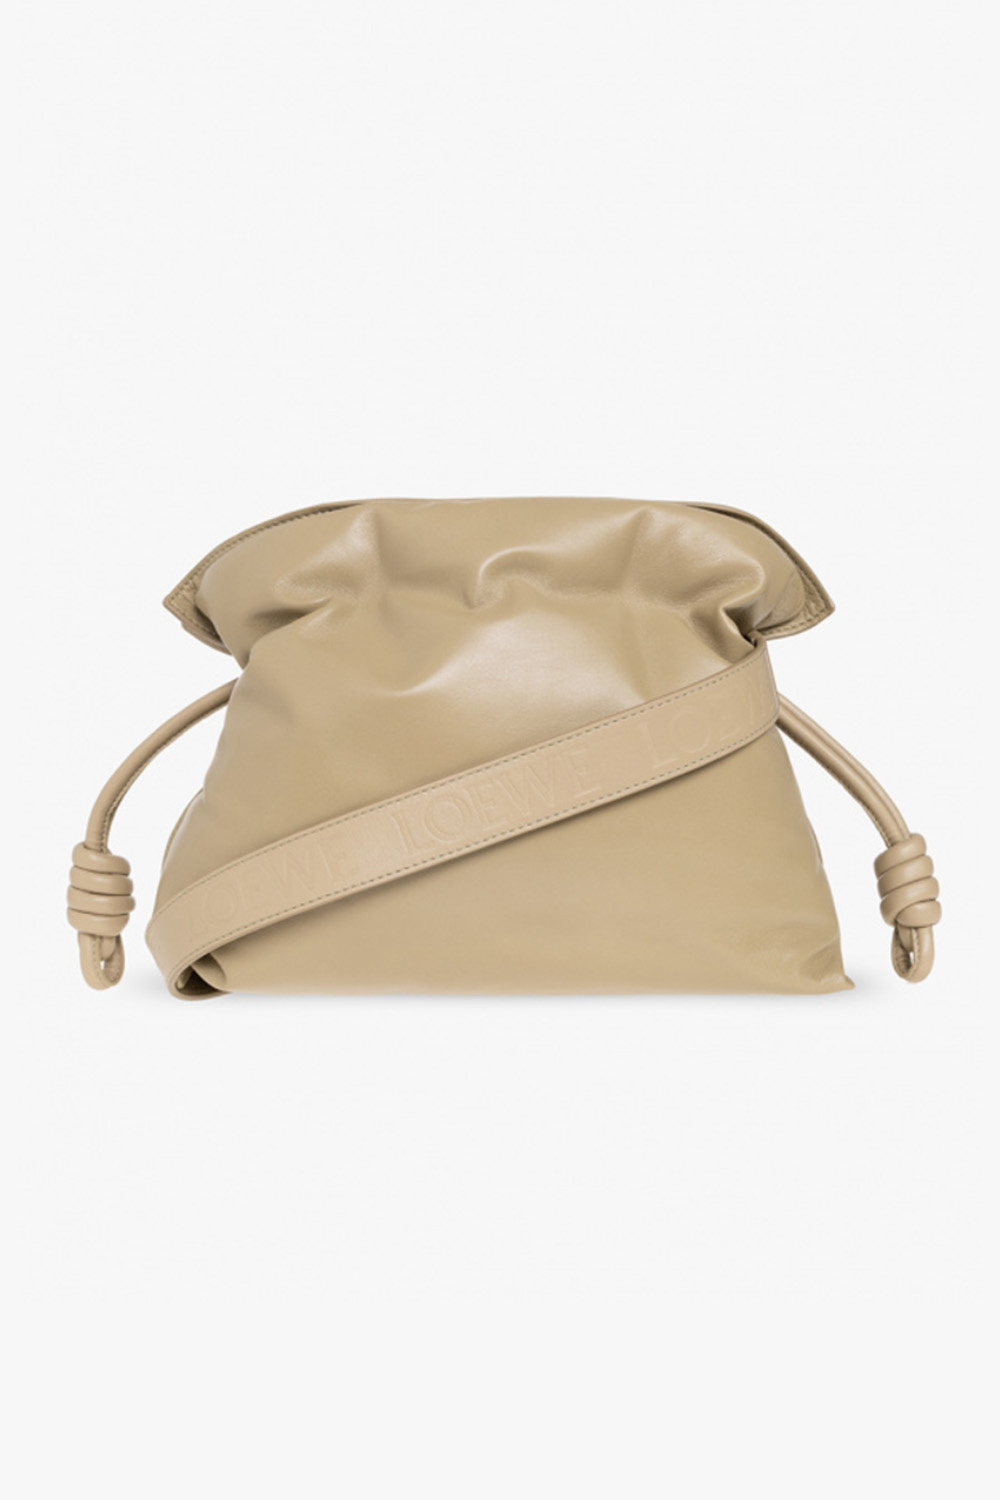 Loewe ‘Flamenco Puffer’ shoulder bag